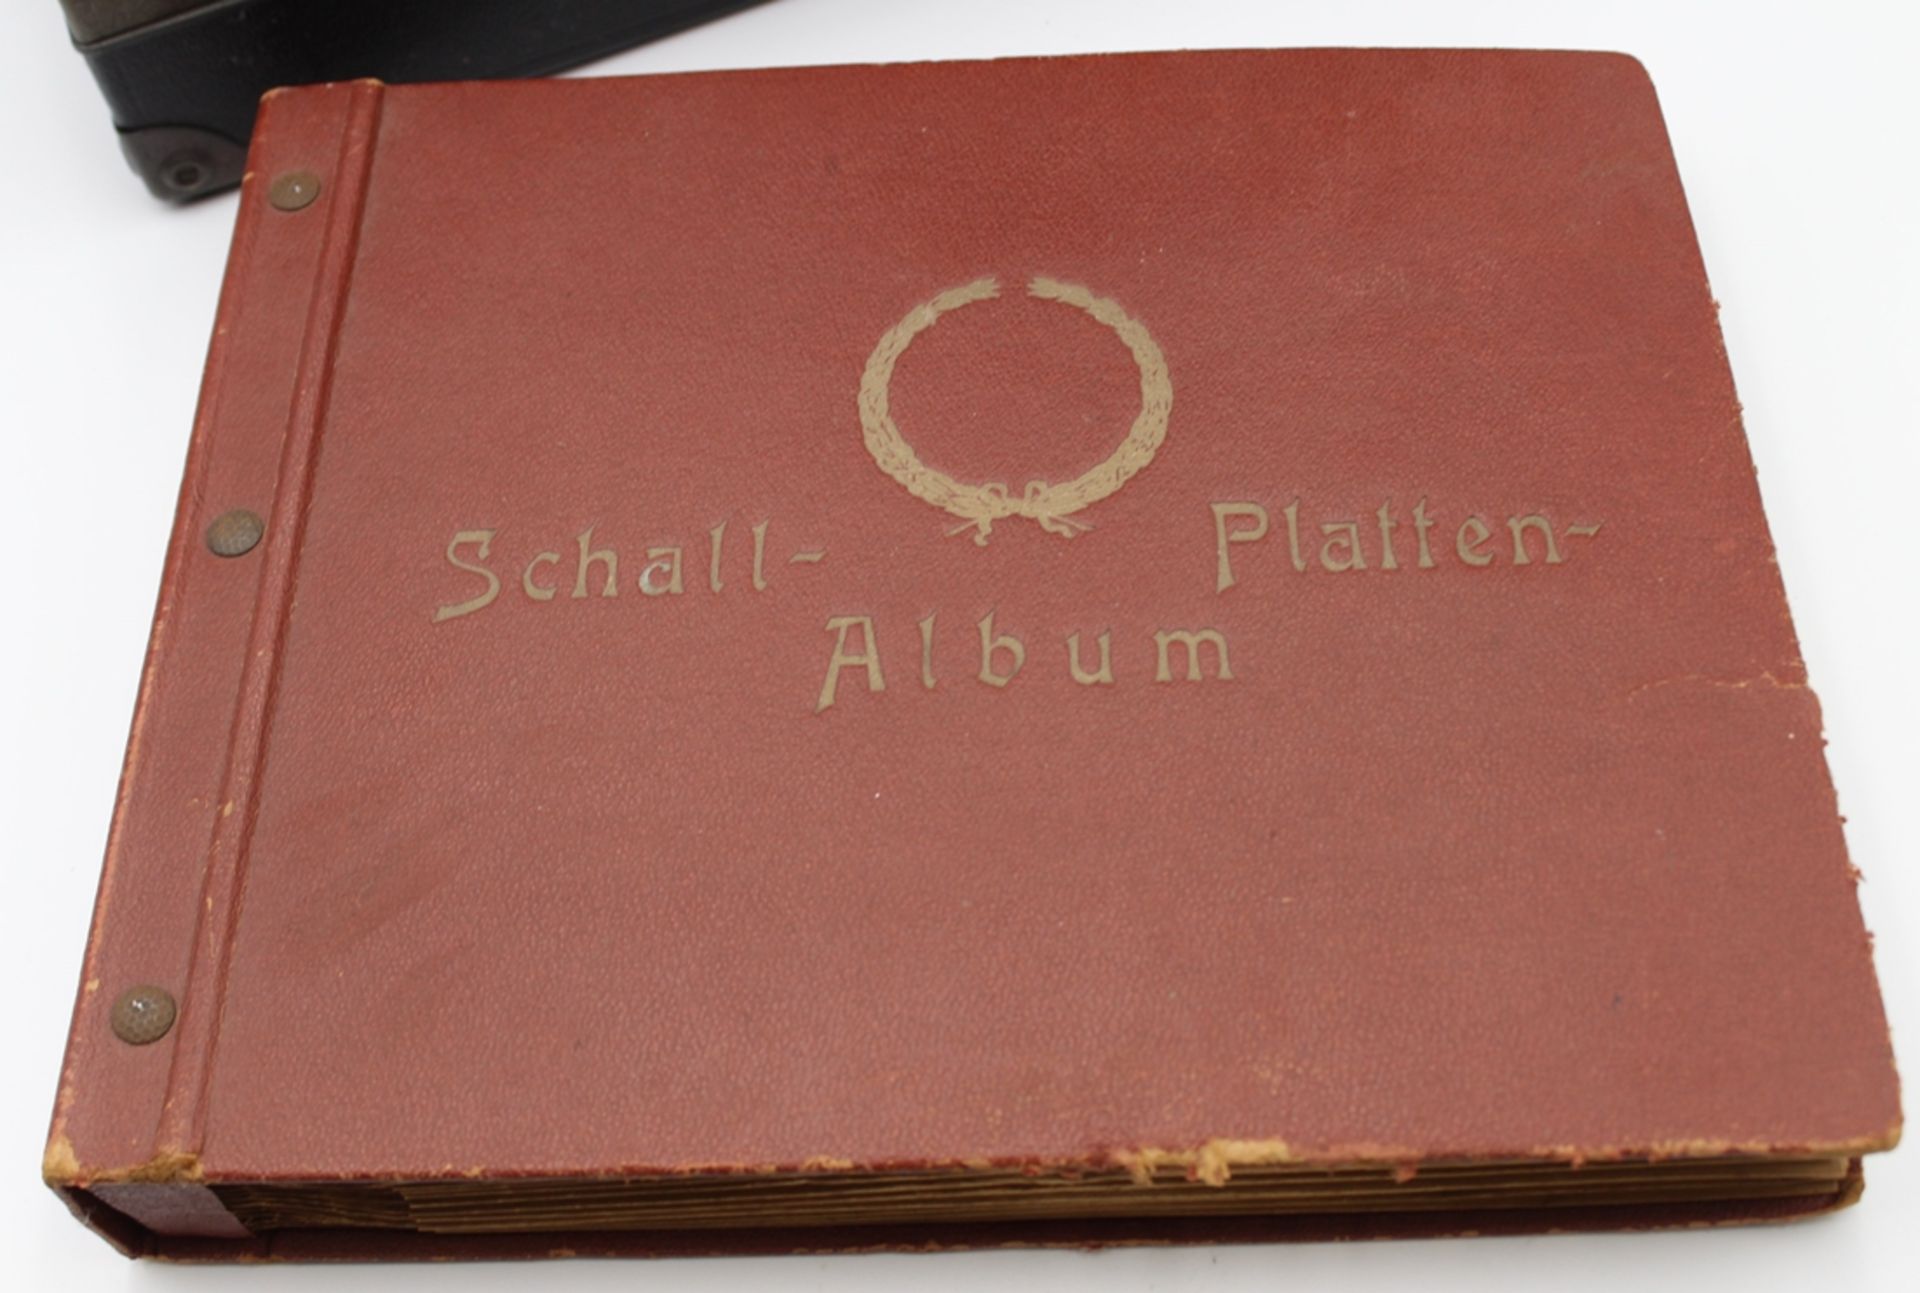 Koffer-Grammophon "Electrola" mit einem Album Schellackplatten, funktionstüchtig - Image 4 of 8